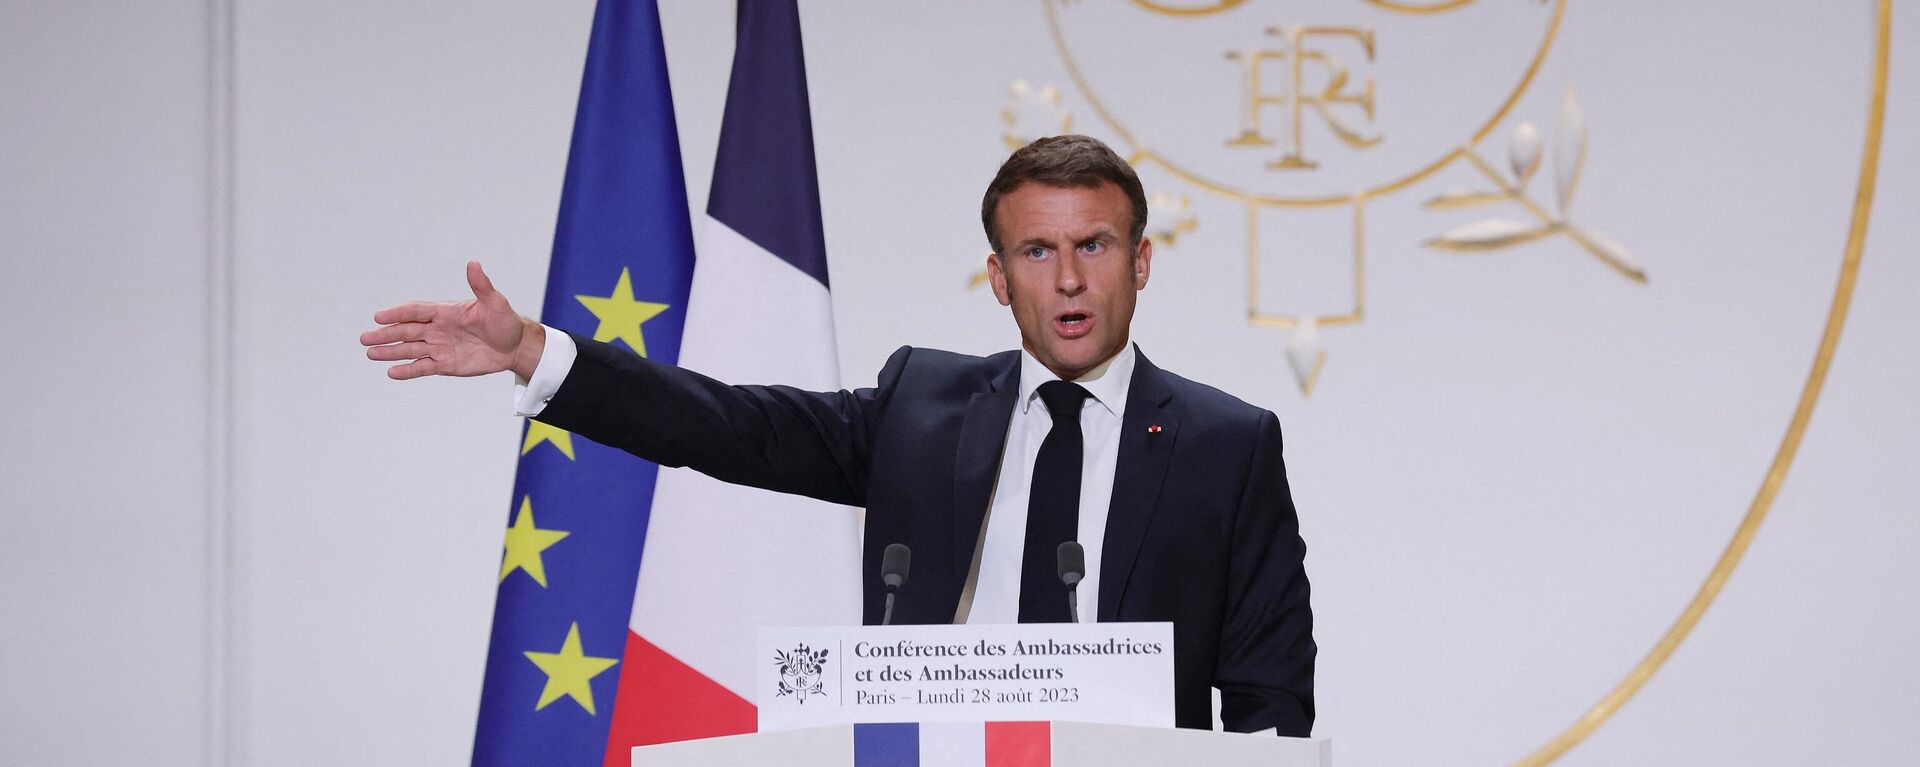 O presidente francês Emmanuel Macron dirige-se aos embaixadores franceses durante a conferência de embaixadores no Palácio do Eliseu, em Paris, em 28 de agosto de 2023 - Sputnik Brasil, 1920, 26.09.2023